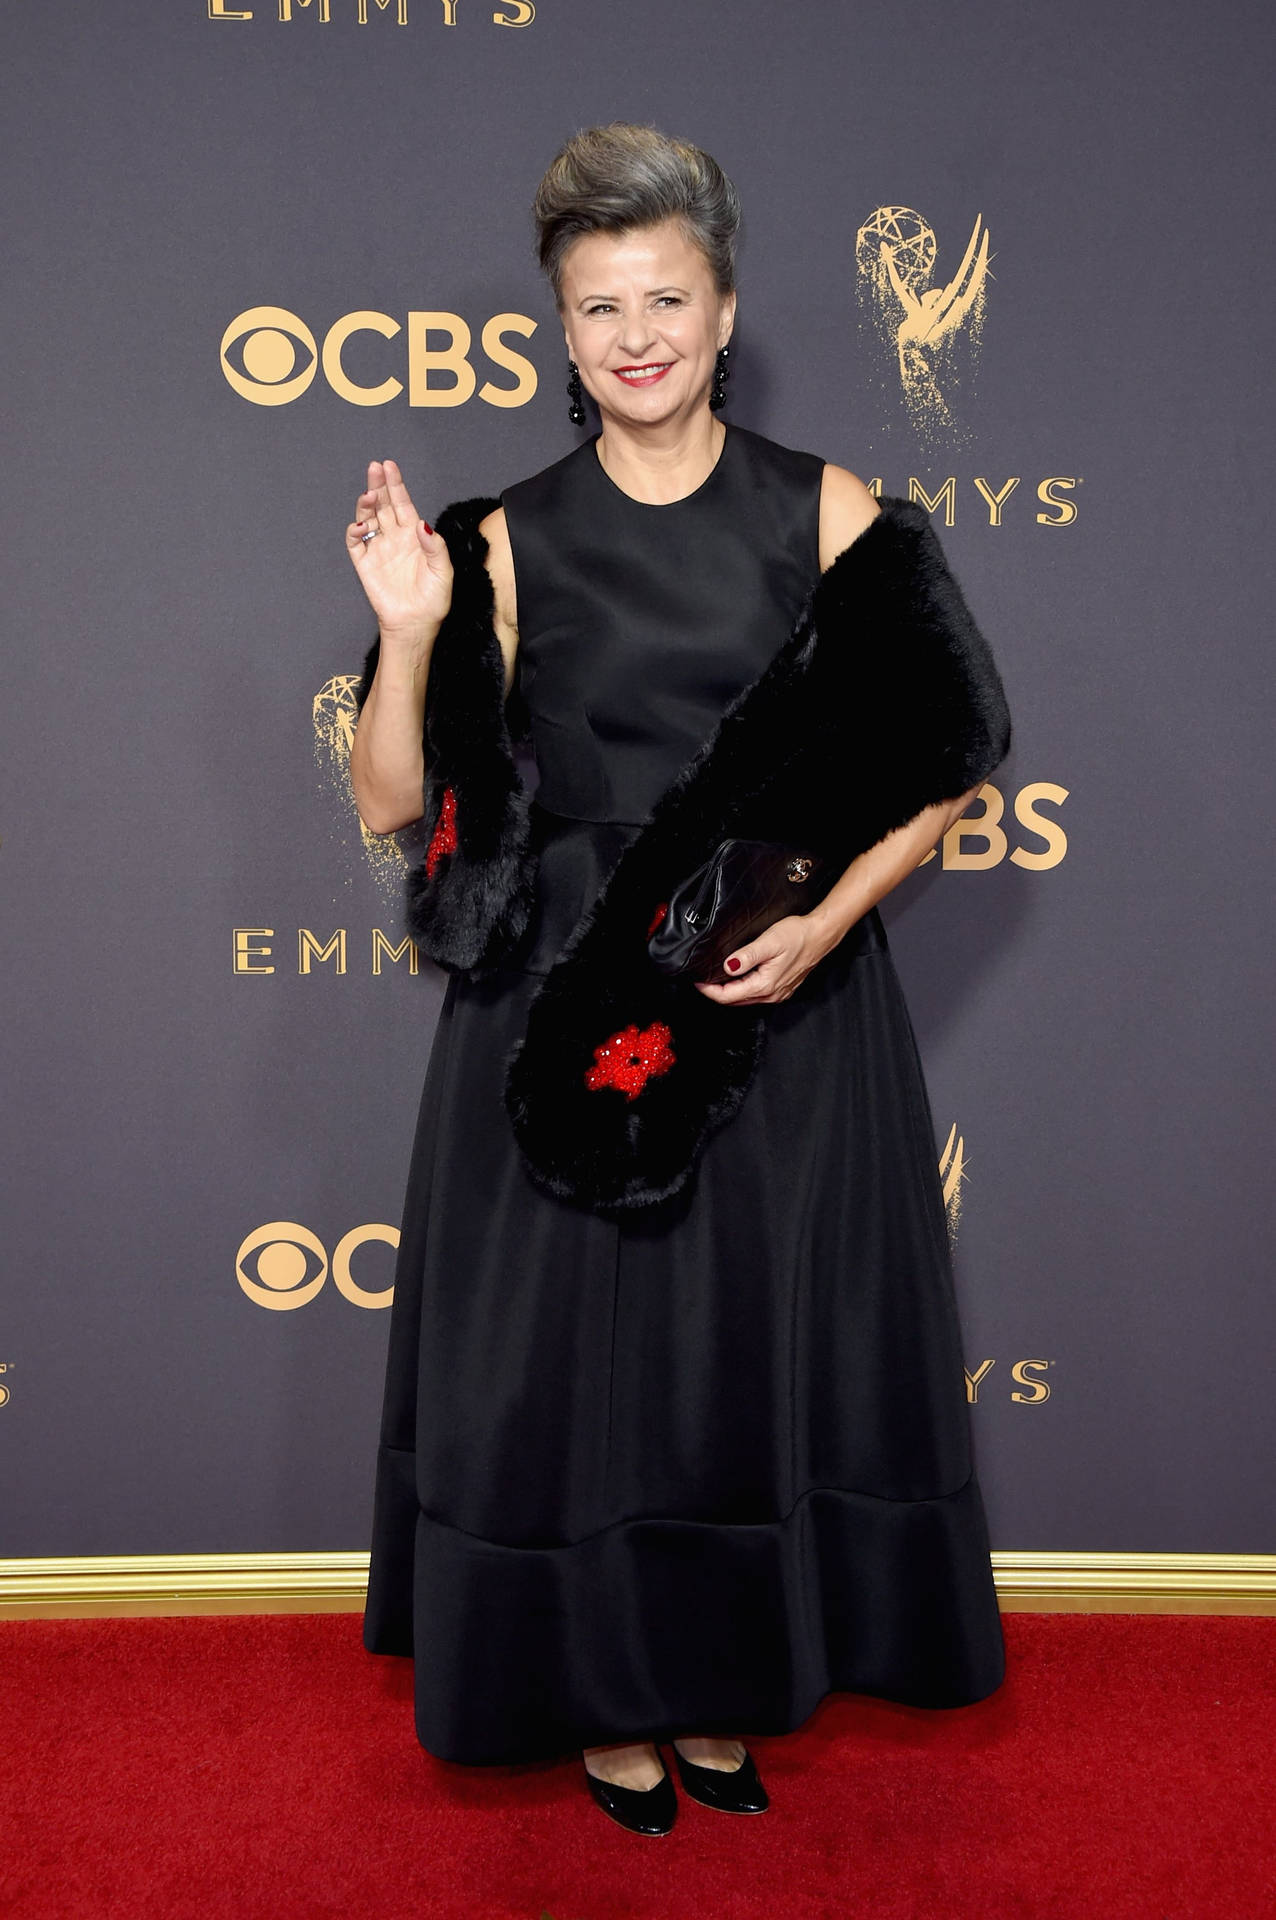 Skuespiller Tracey Ullman i CBS Award Winning Show Wallpaper